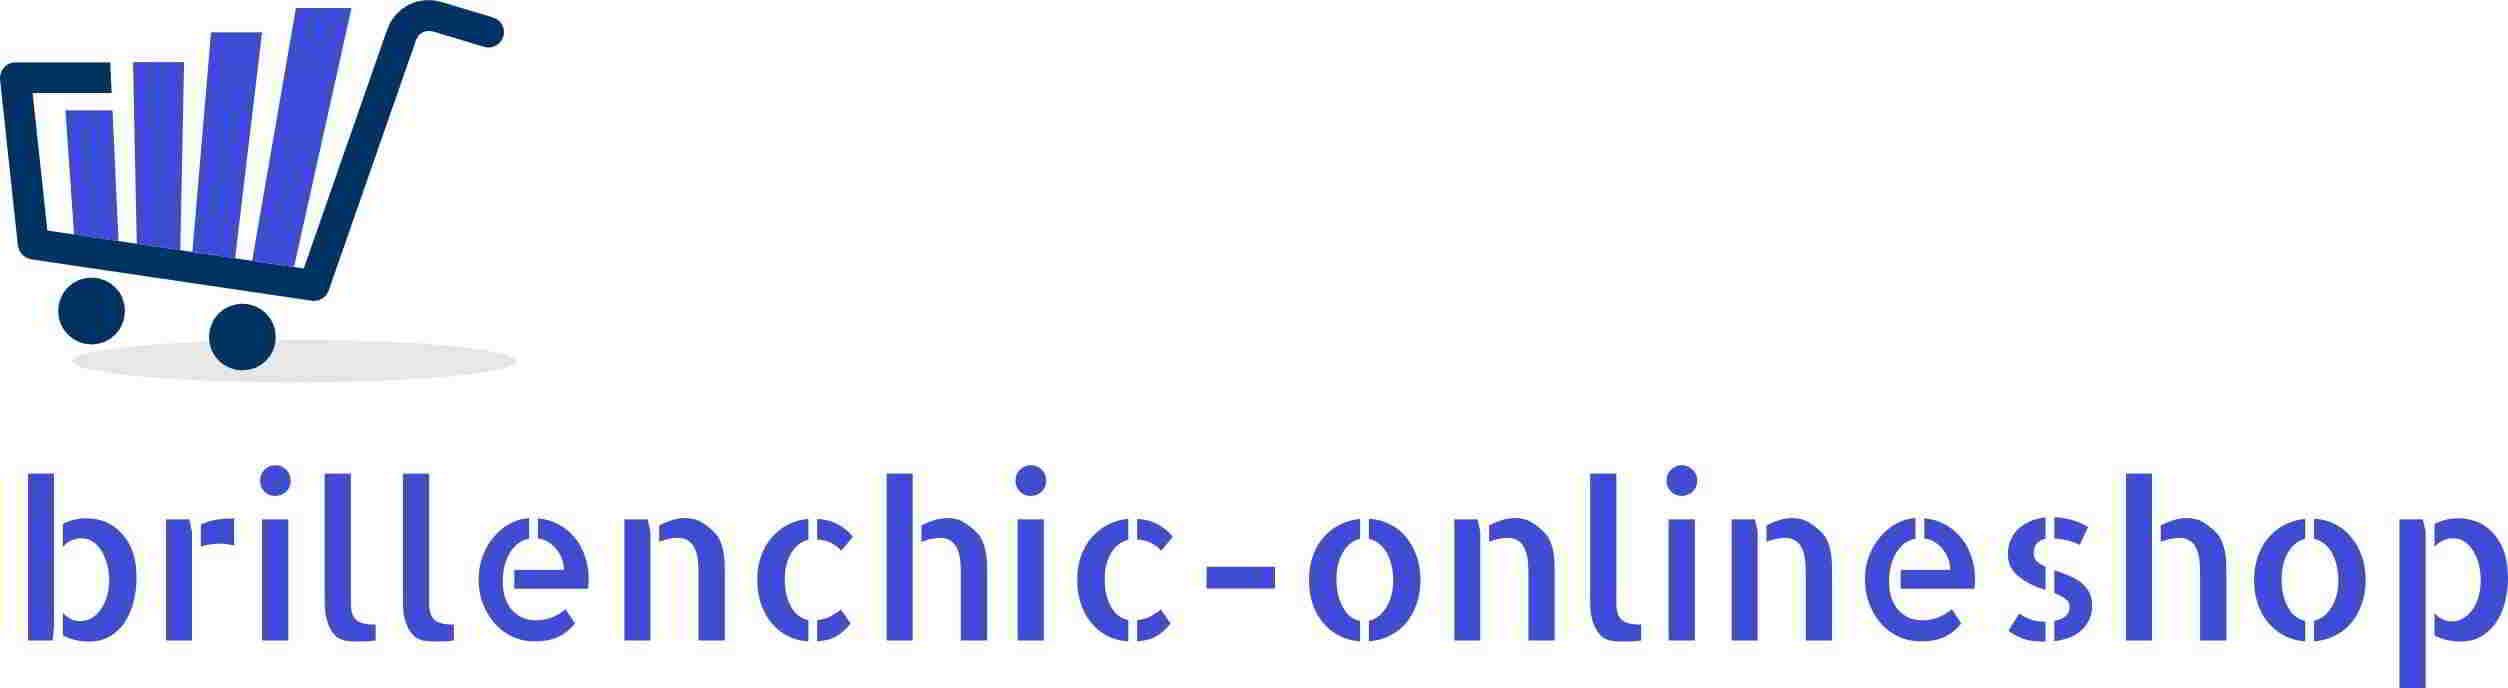 Brillenchic-onlineshop in Berlin-Logo